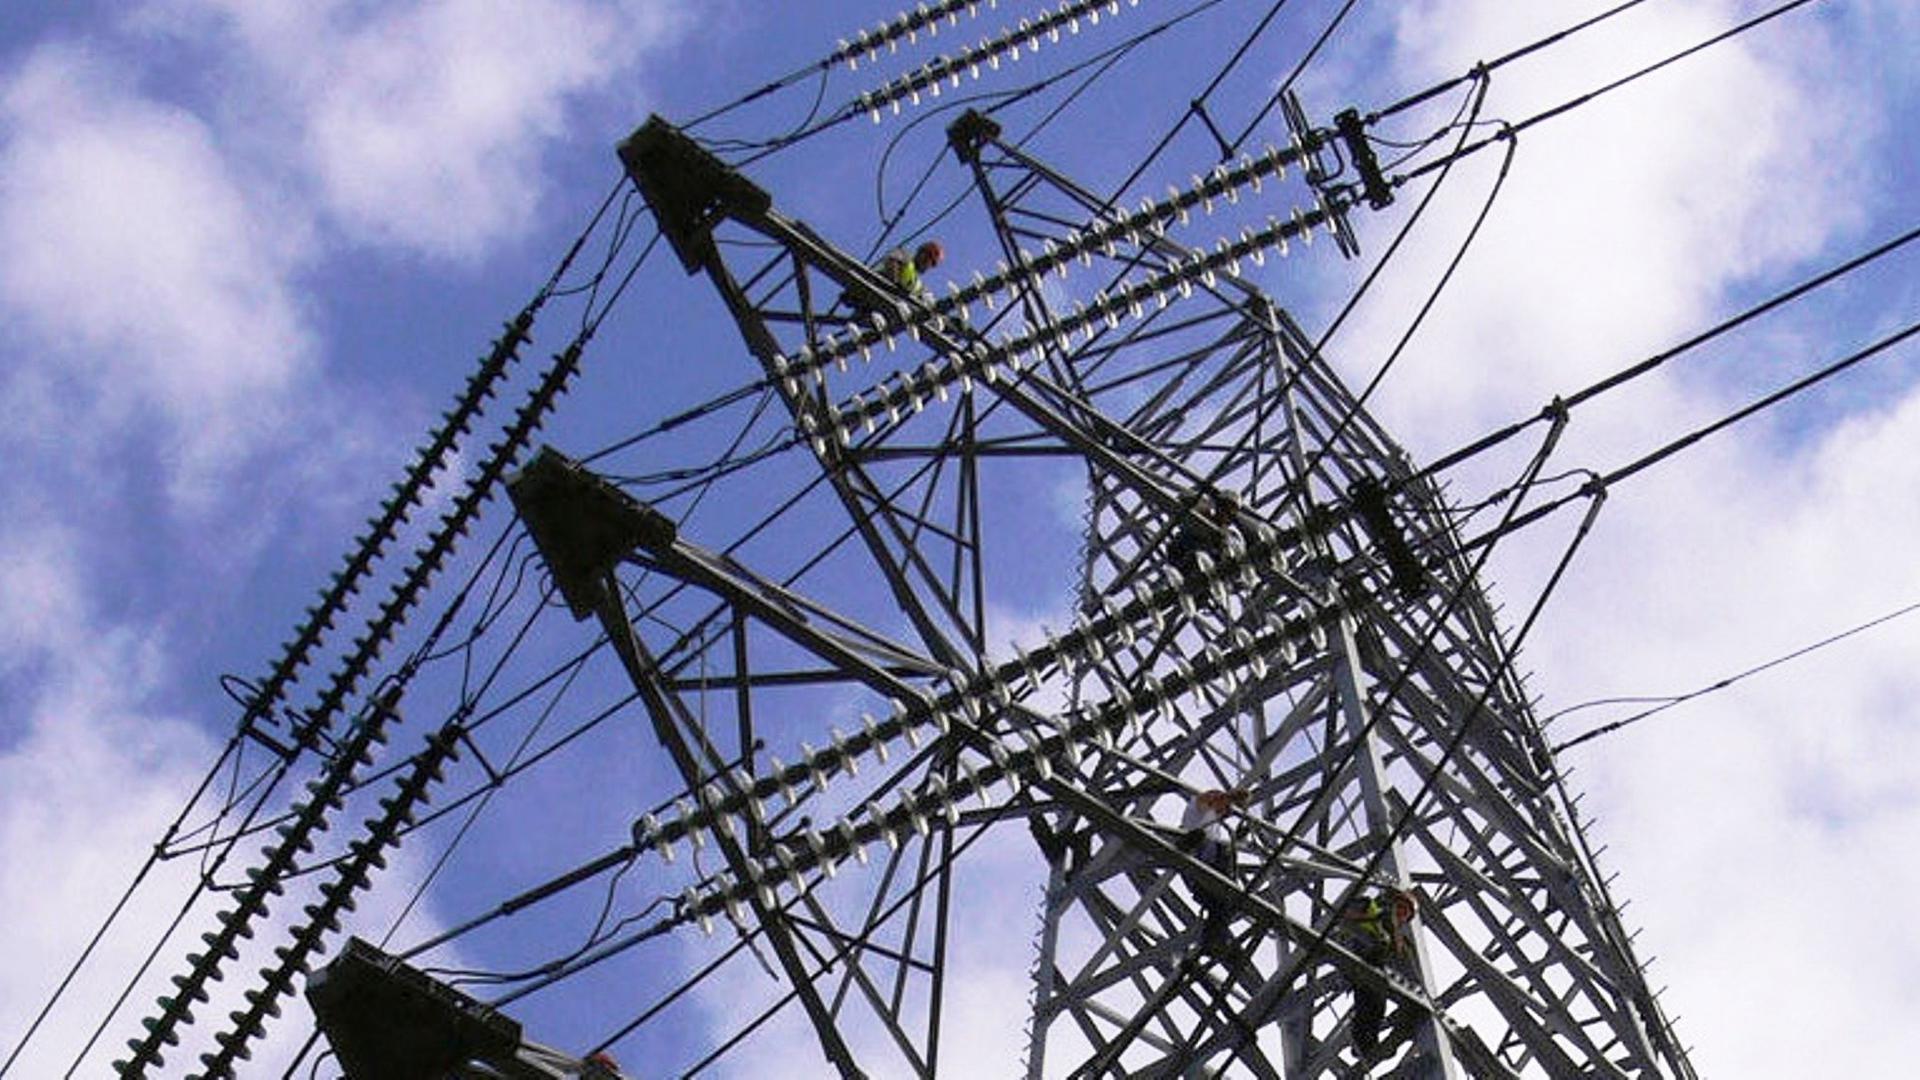 Le gouvernement fédéral belge a décidé d'abaisser la TVA sur l'électricité de manière temporaire à 6%, du 1er mars au 1er juillet.